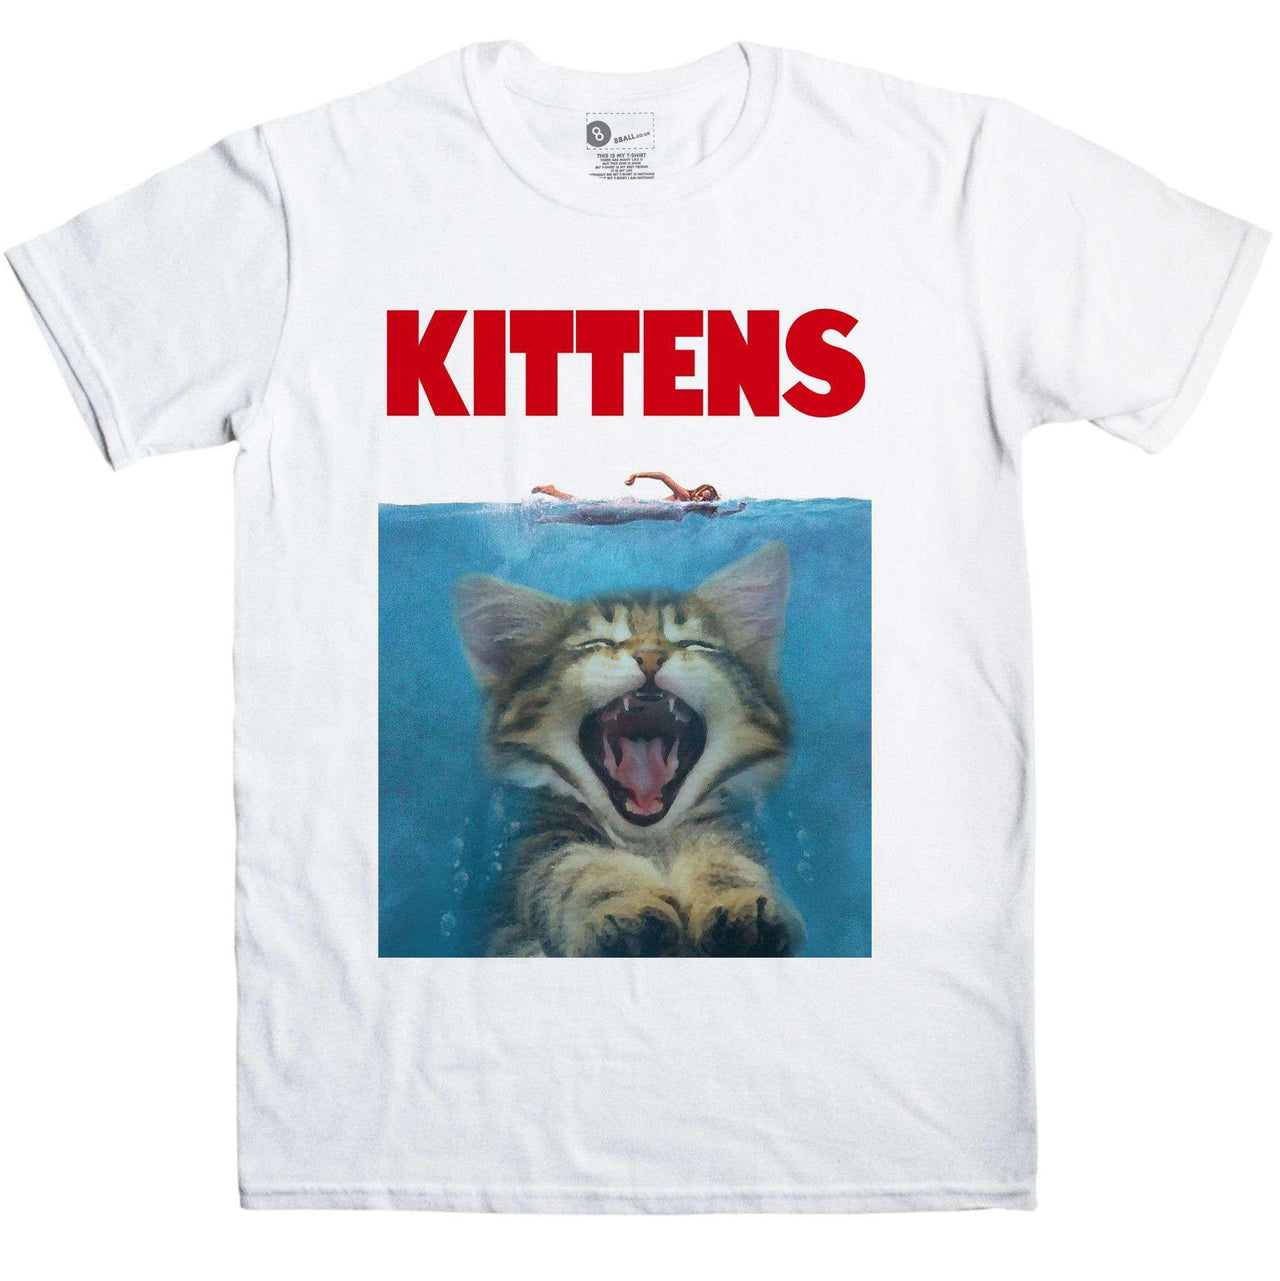 Kittens Spoof T-Shirt For Men 8Ball